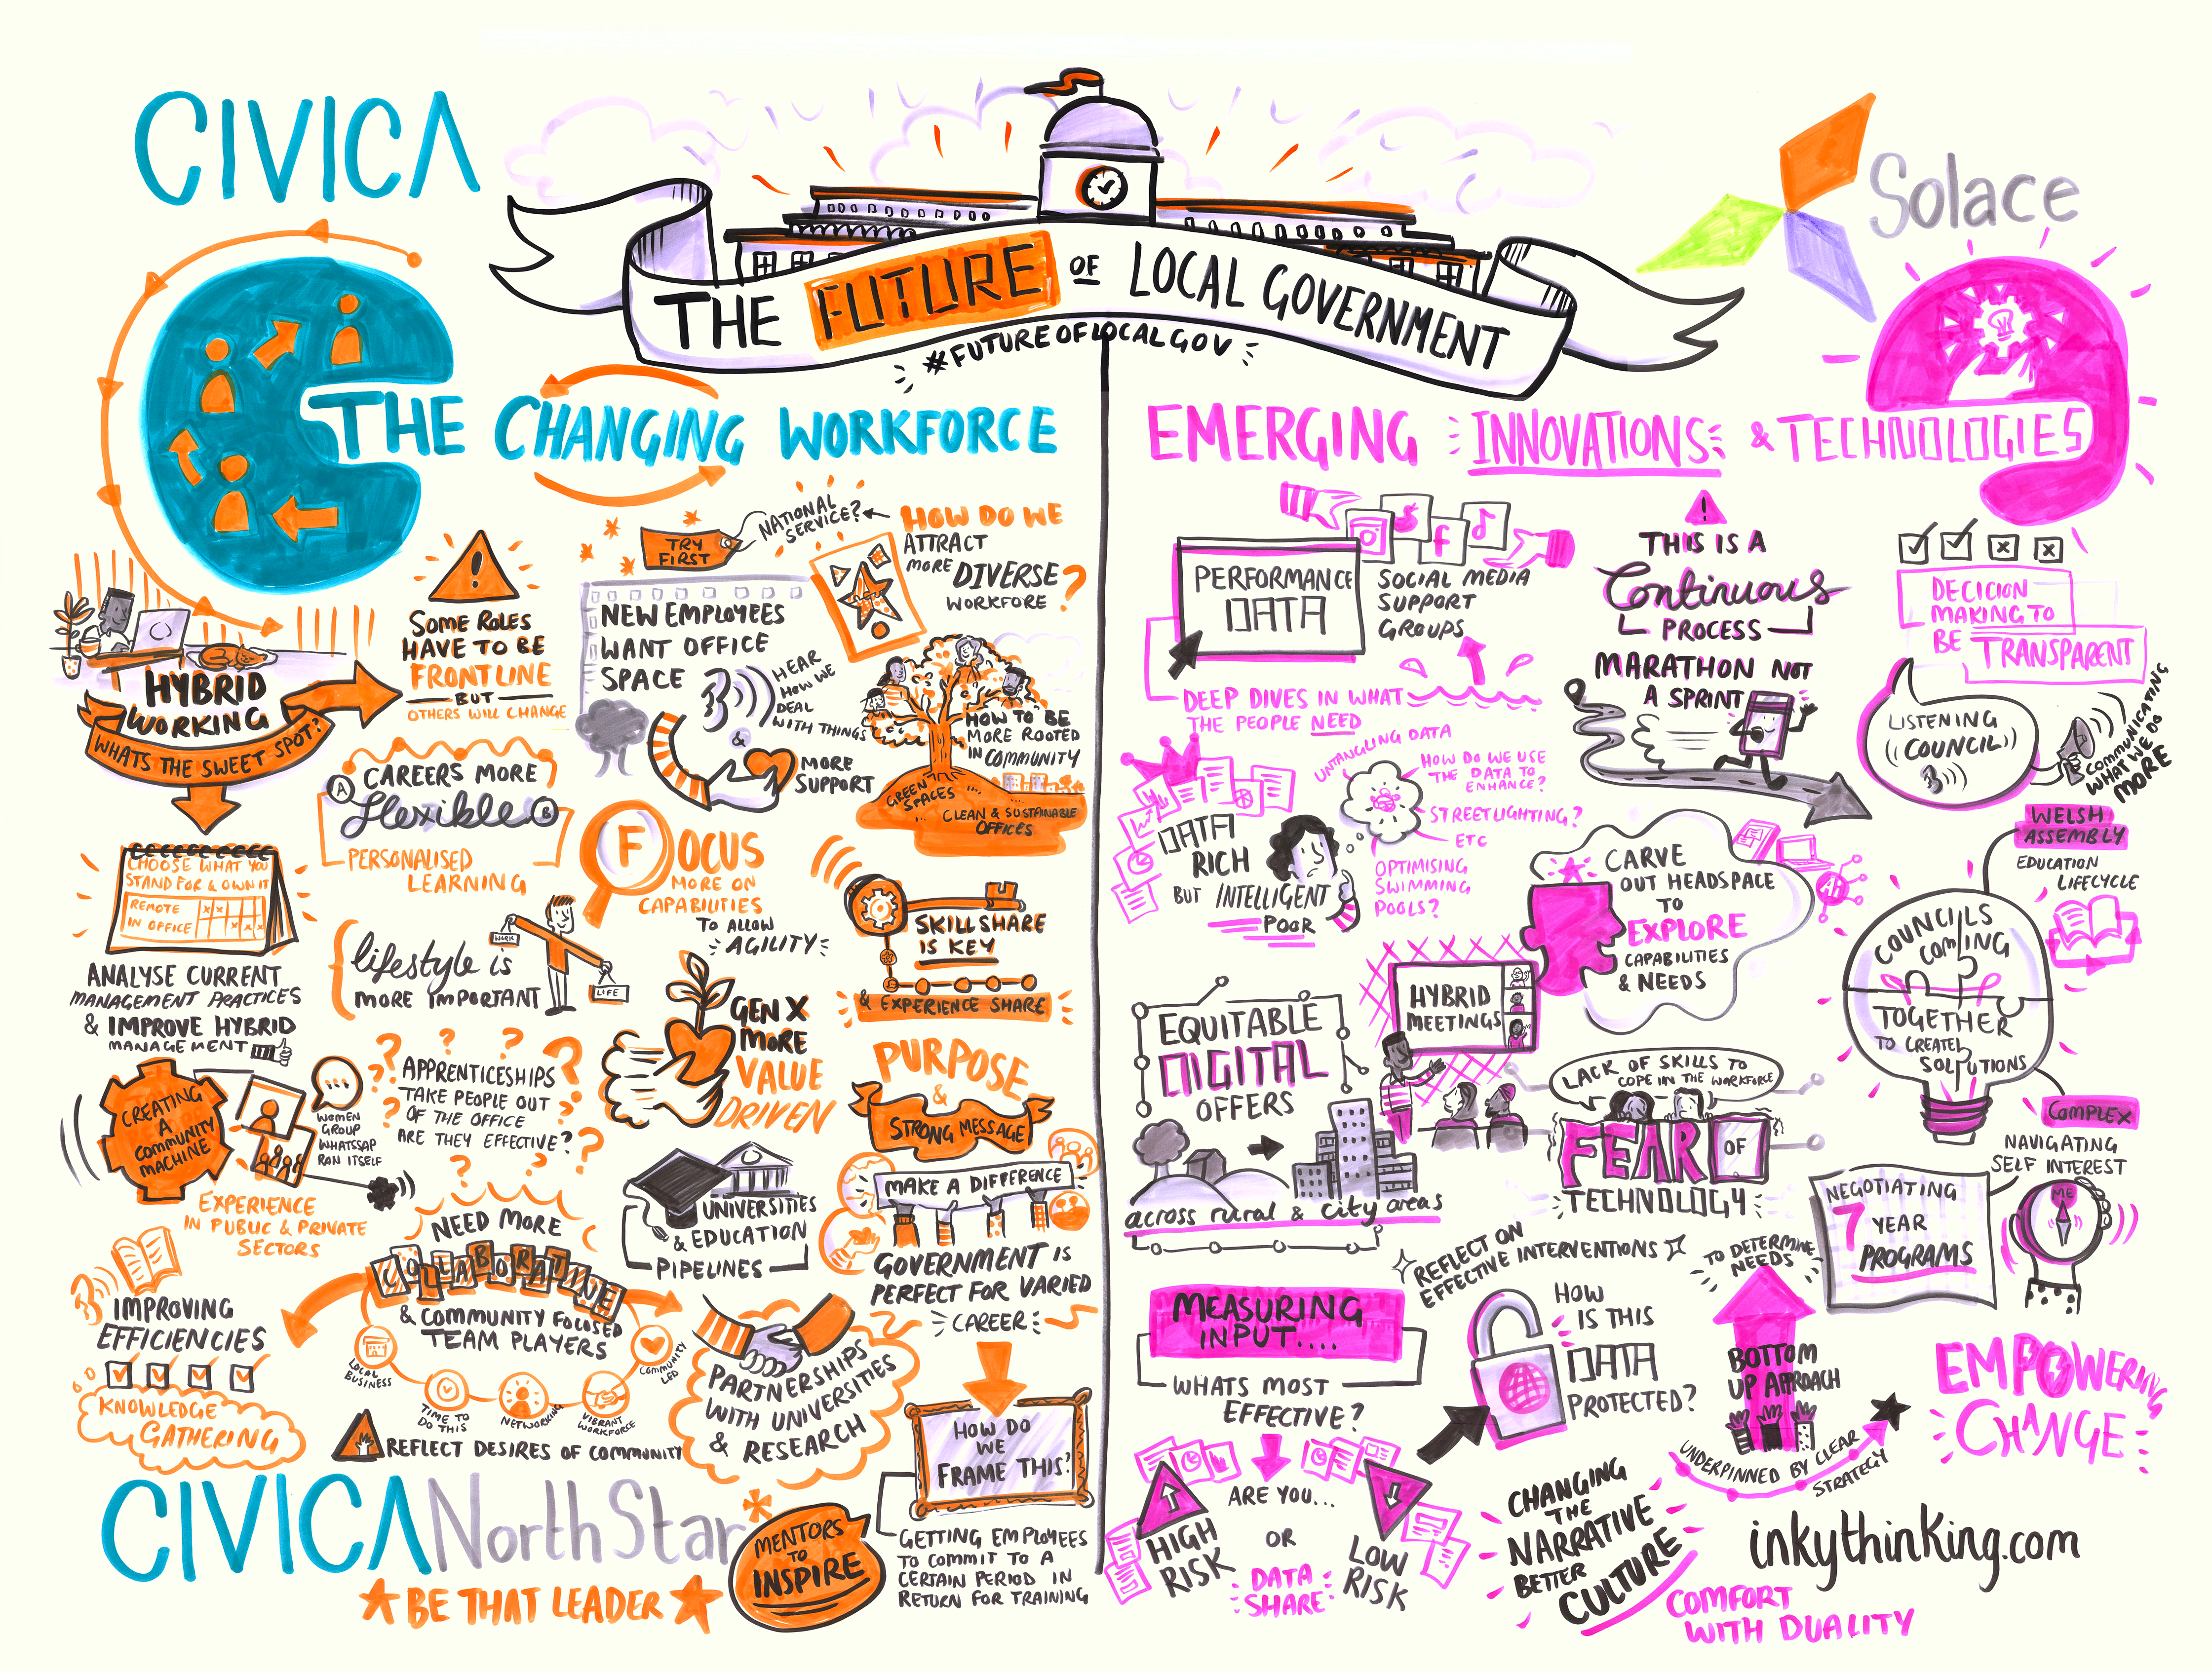 Civica - the future of local government graphic